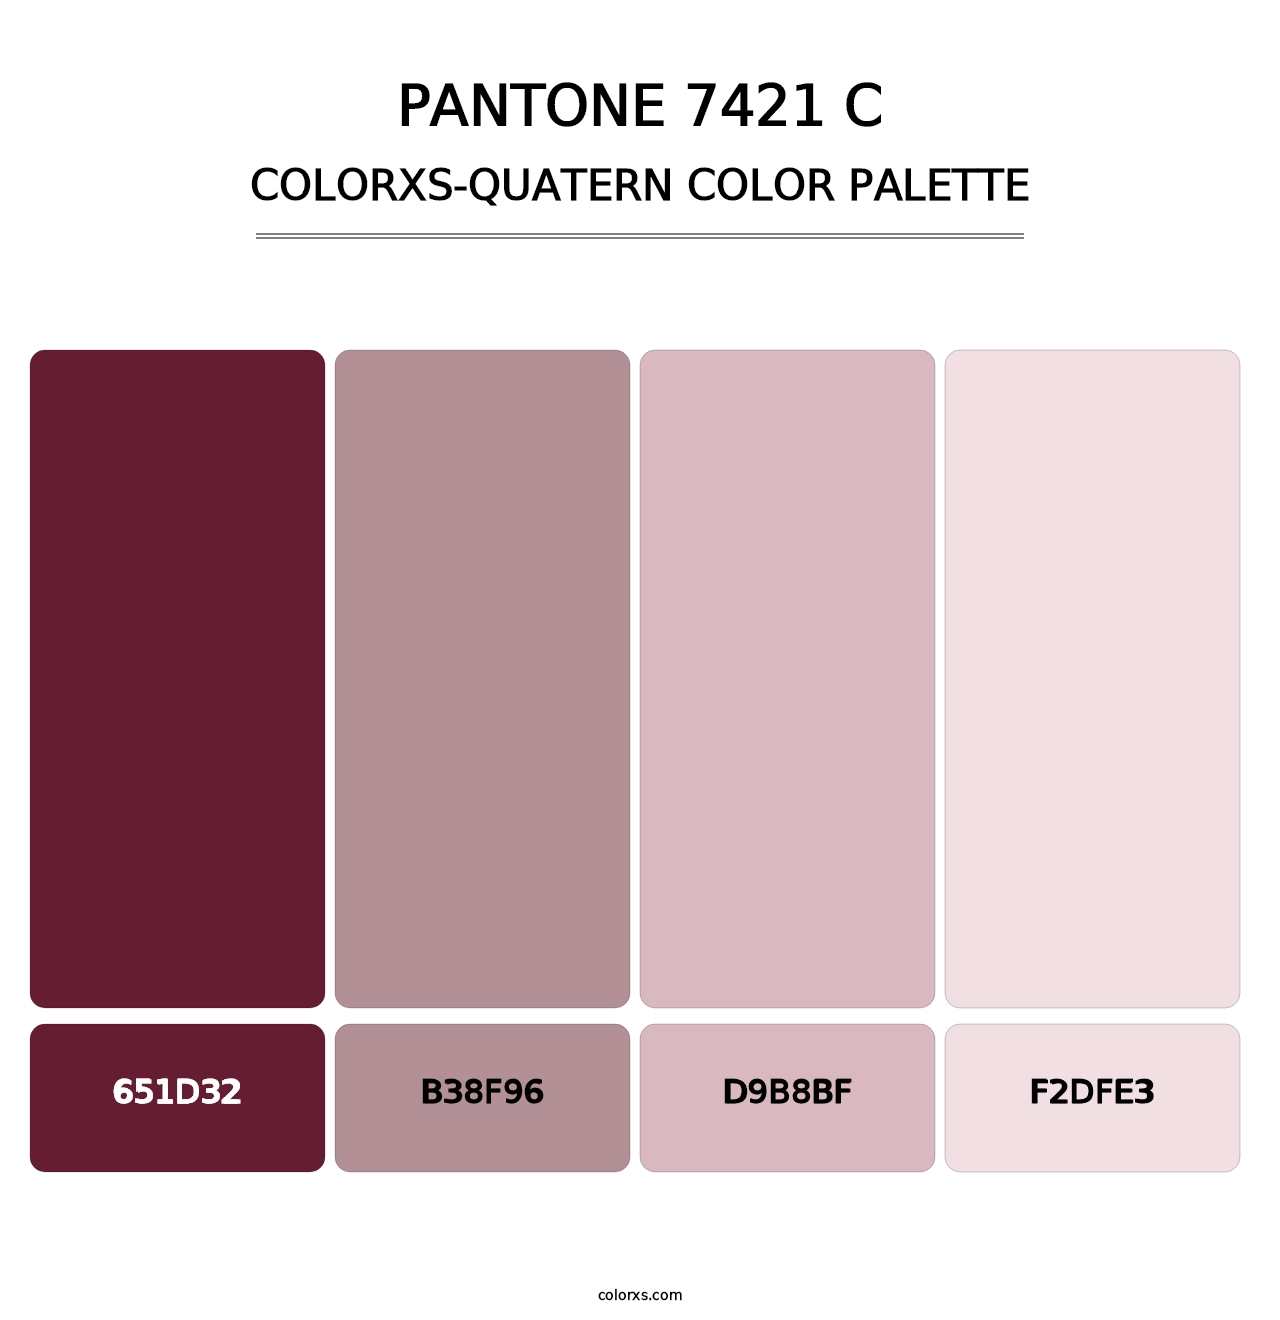 PANTONE 7421 C - Colorxs Quatern Palette